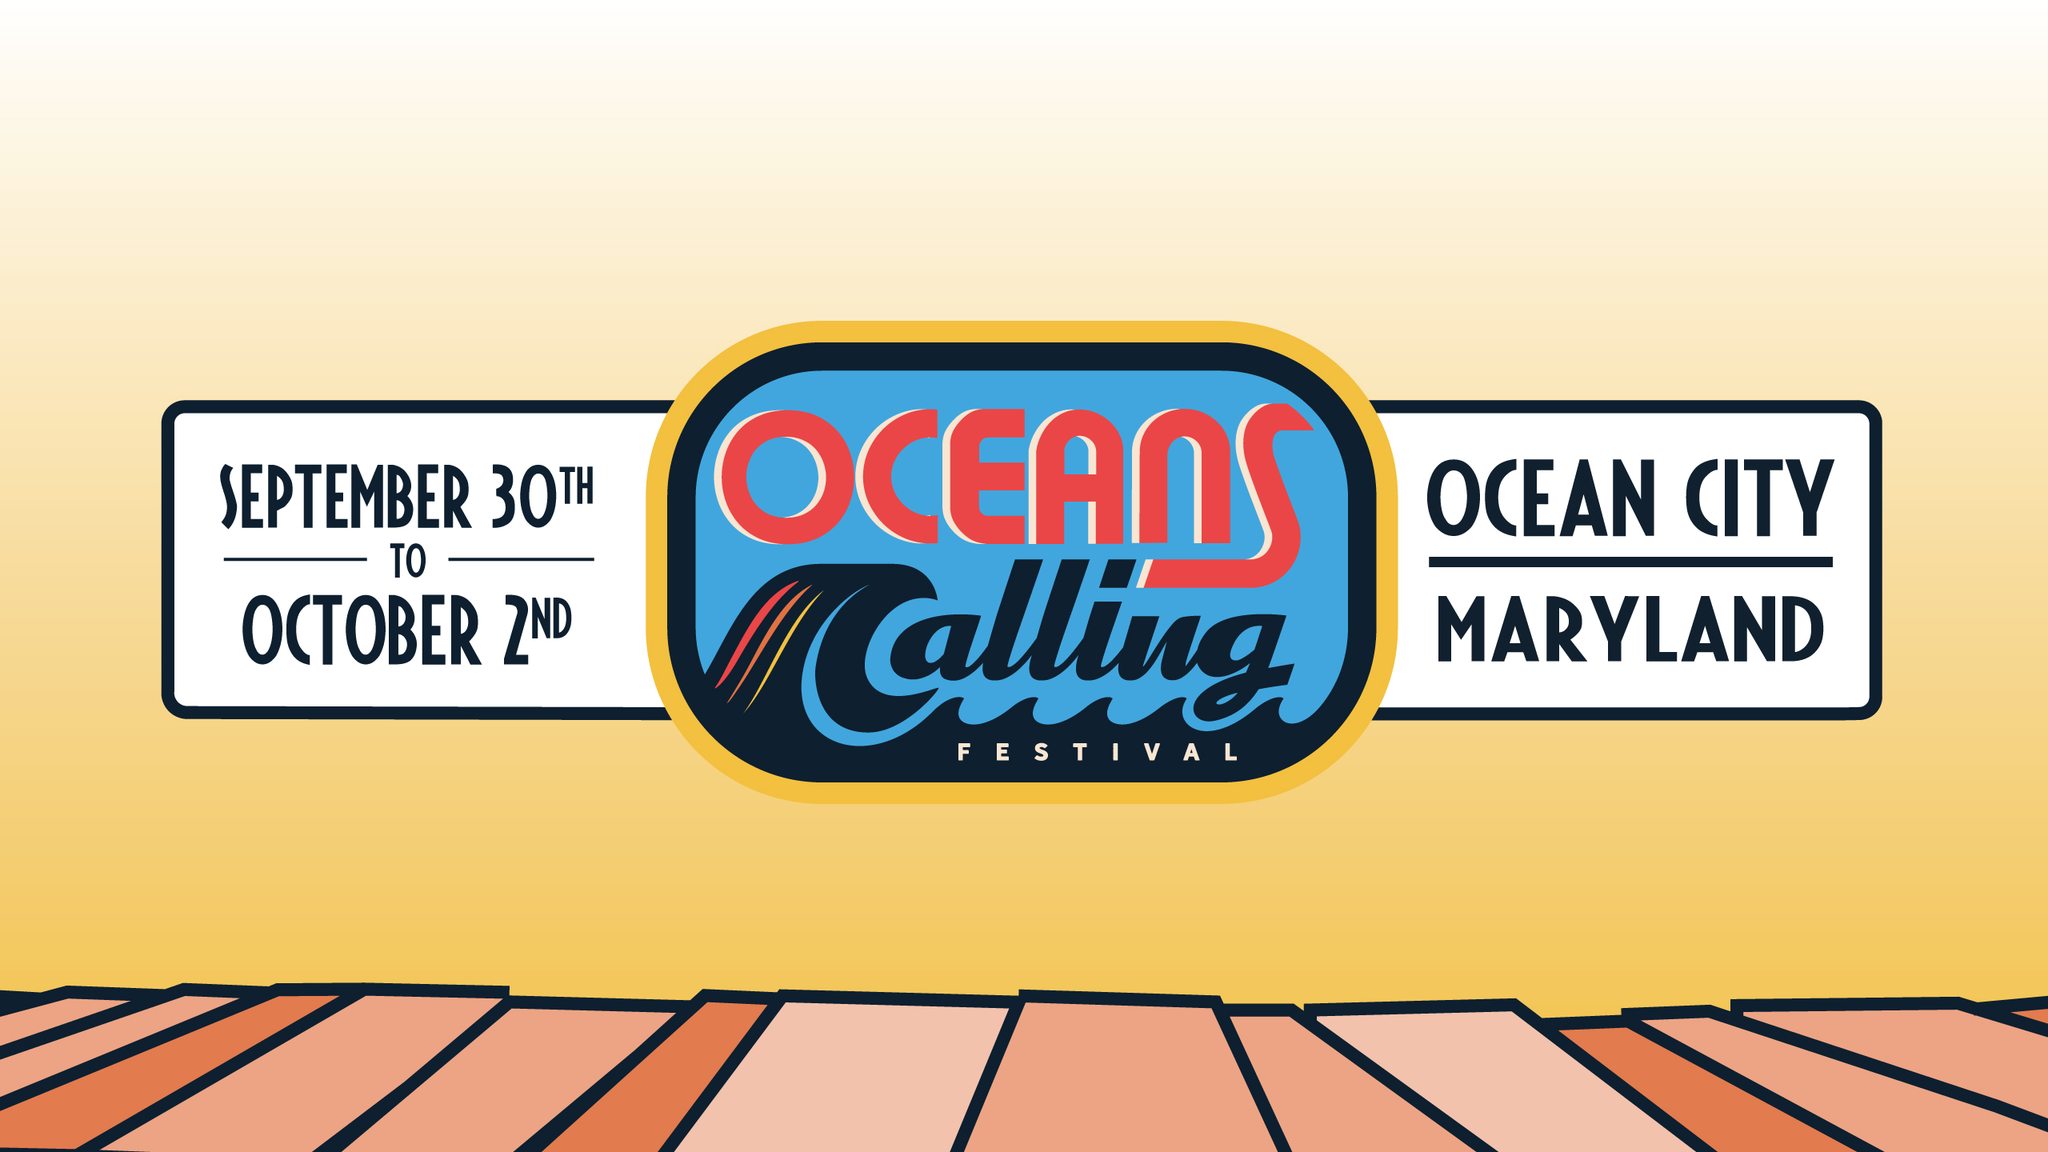 2022 Oceans Calling Festival Ocean City, MD Robert Irvine